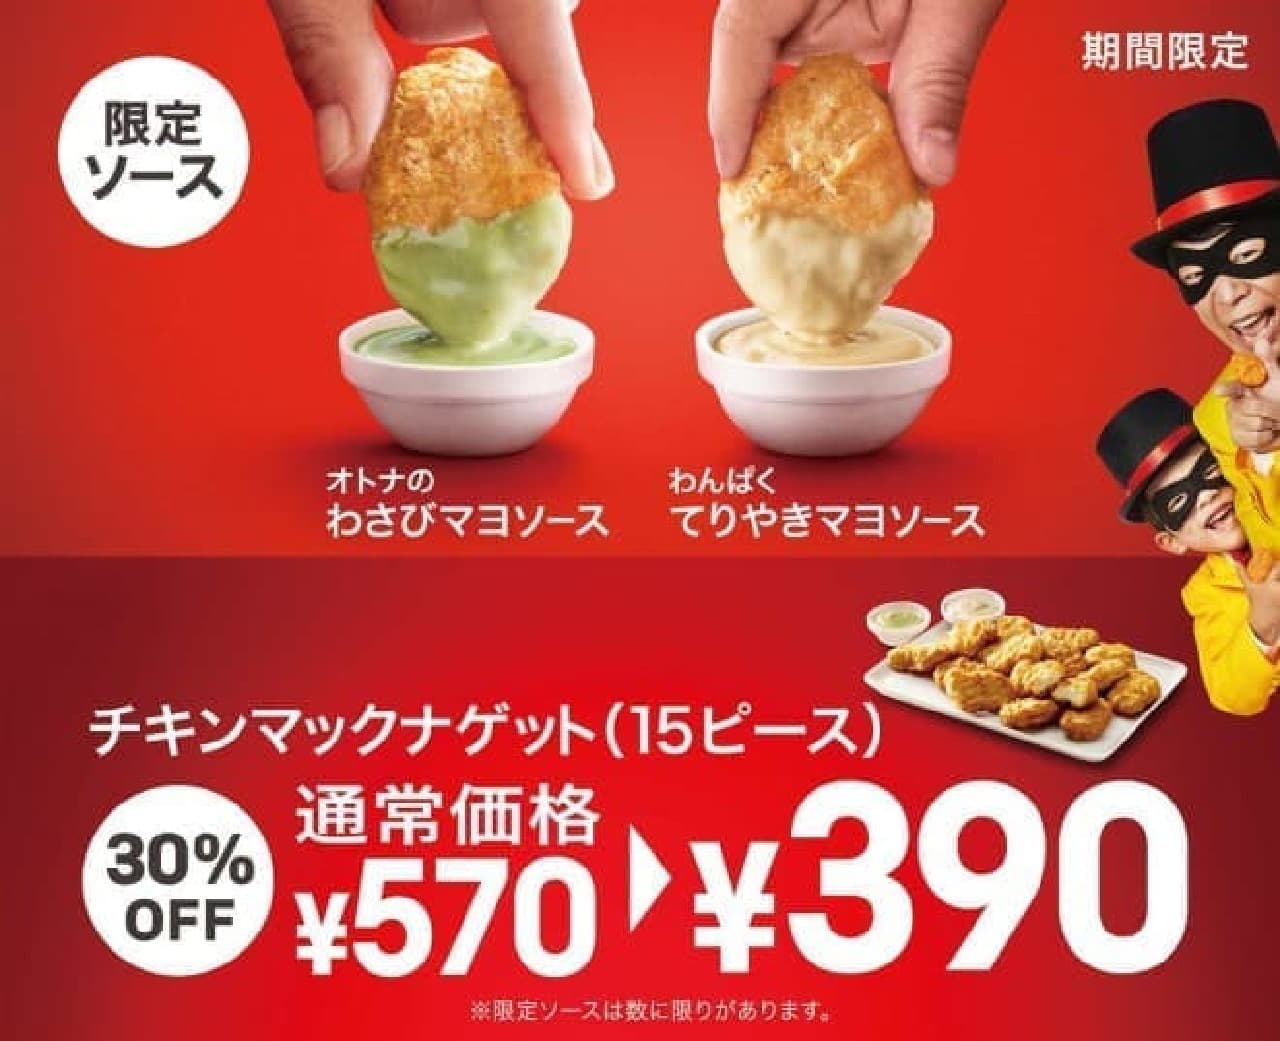 McDonald's "Adult Wasabi Mayo Sauce" and "Naughty Teriyaki Mayo Sauce"